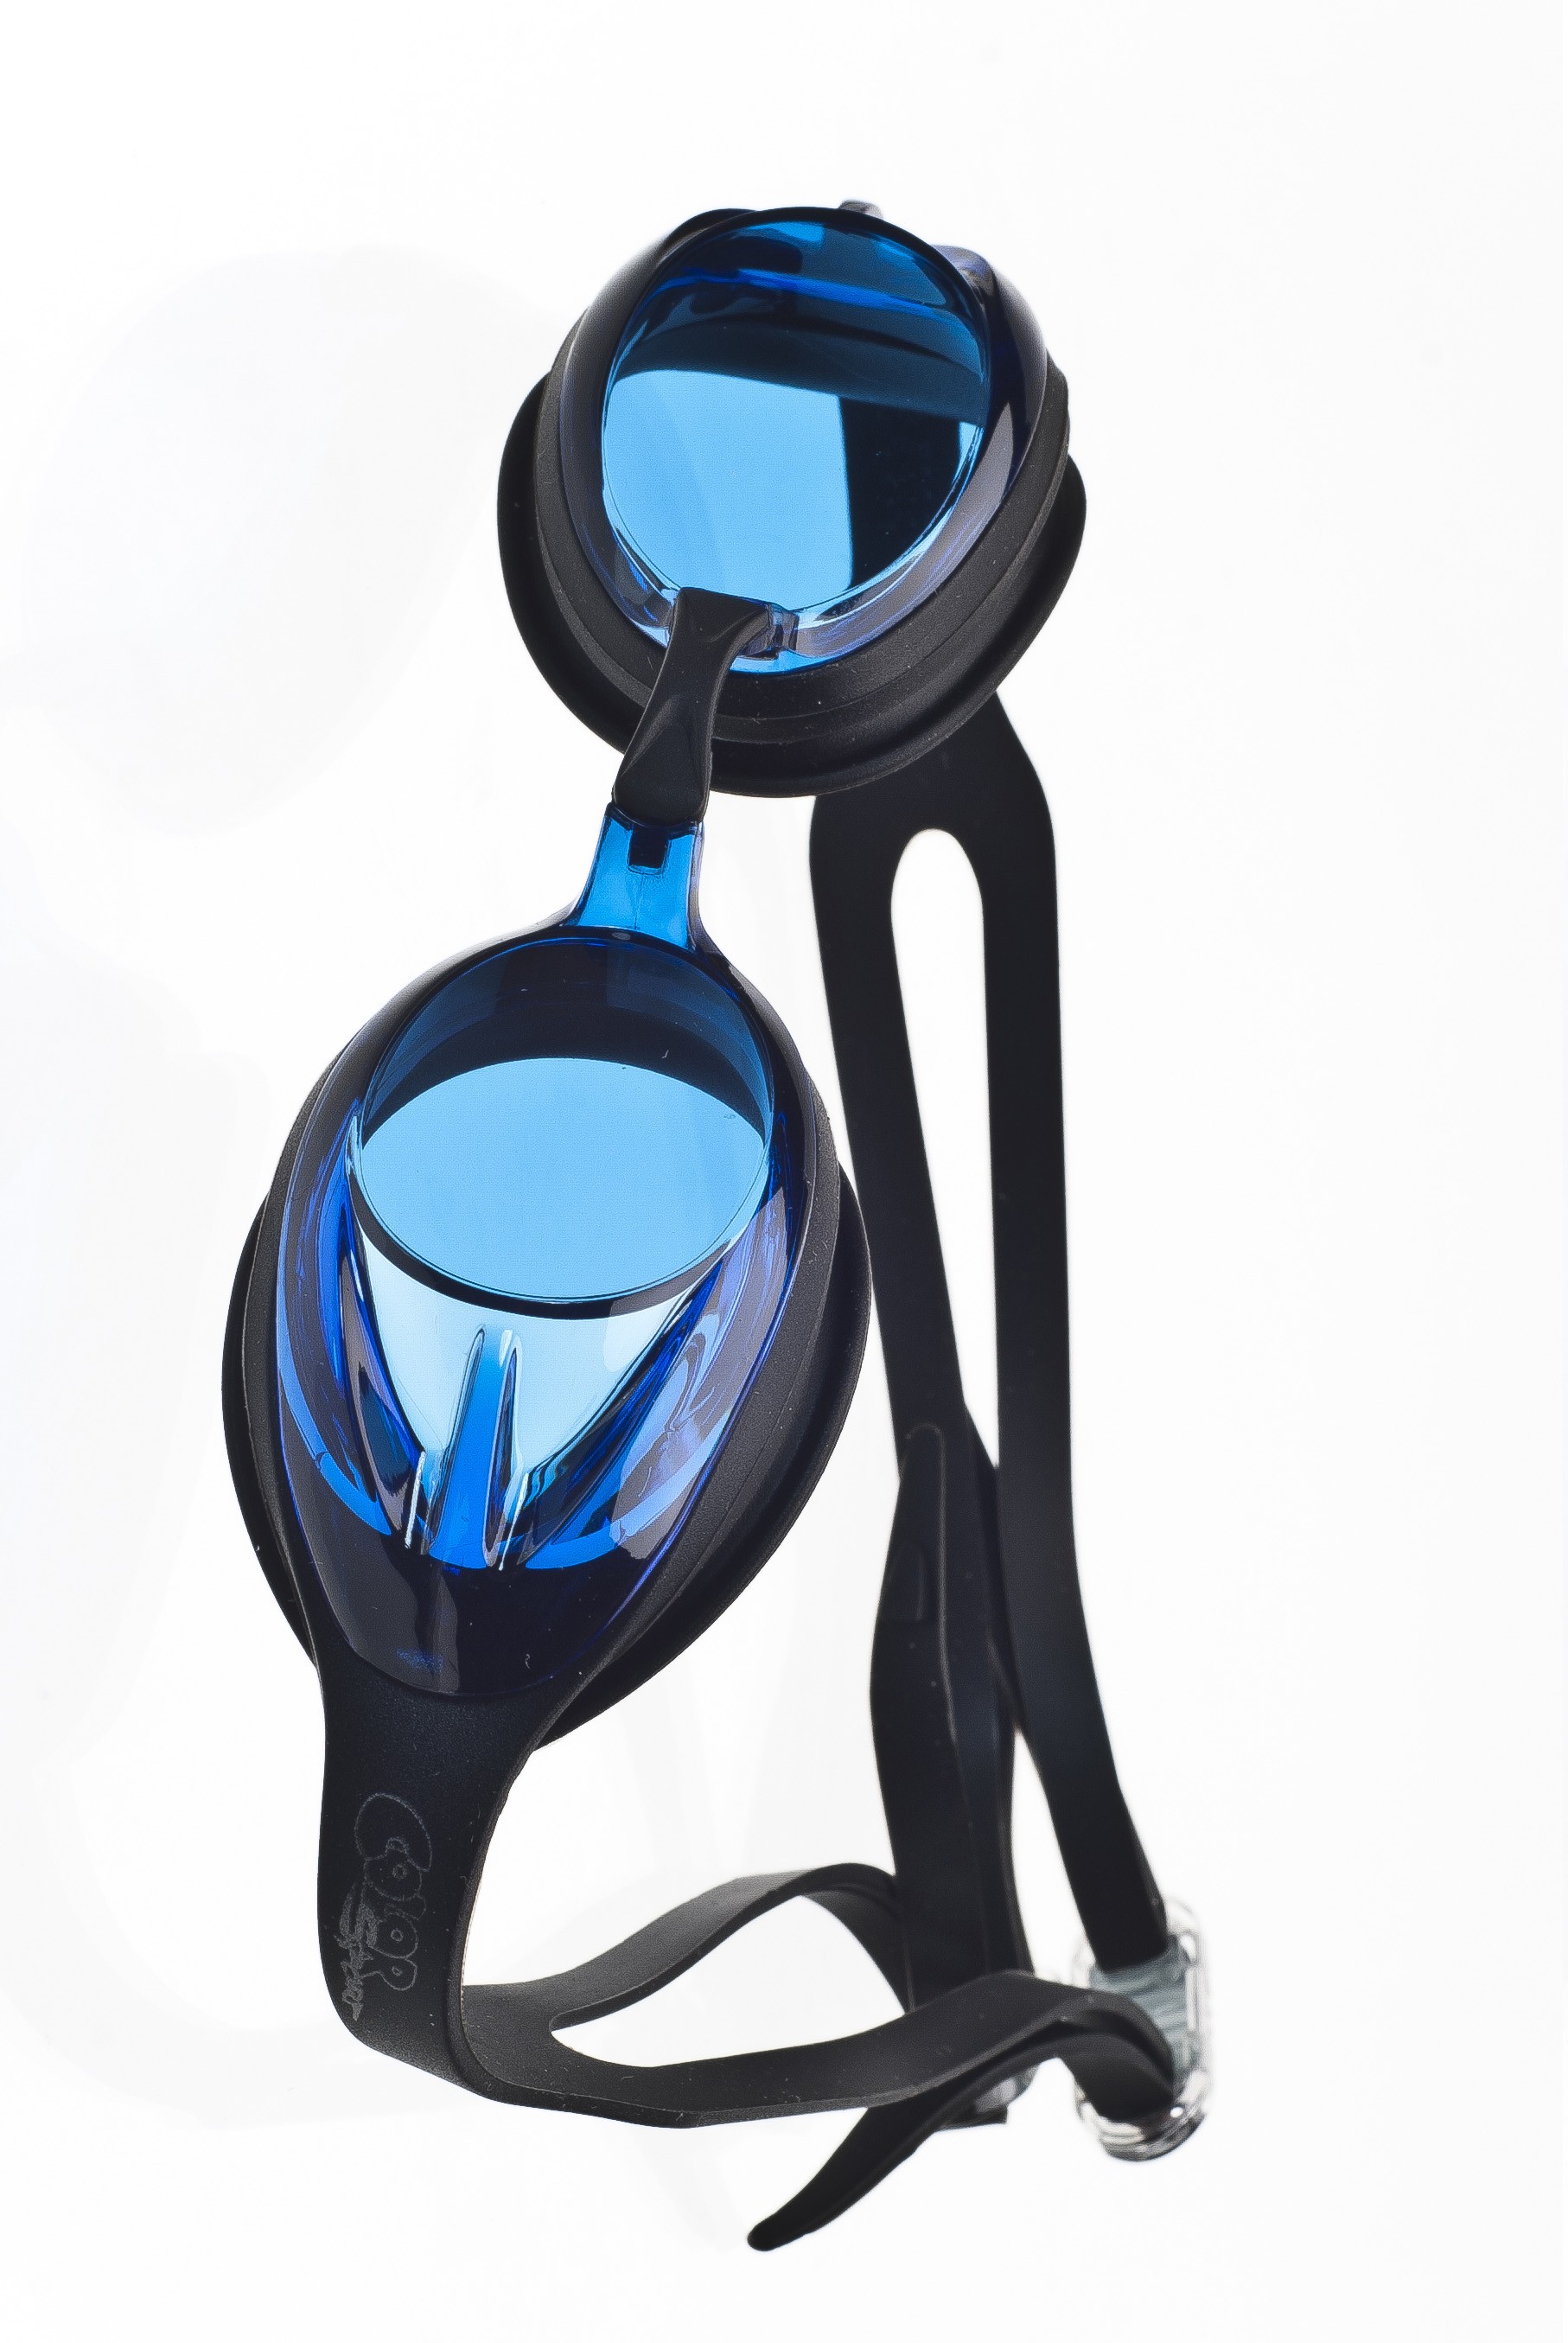 Felnőtt úszószemüveg N3-AF kék-fekete